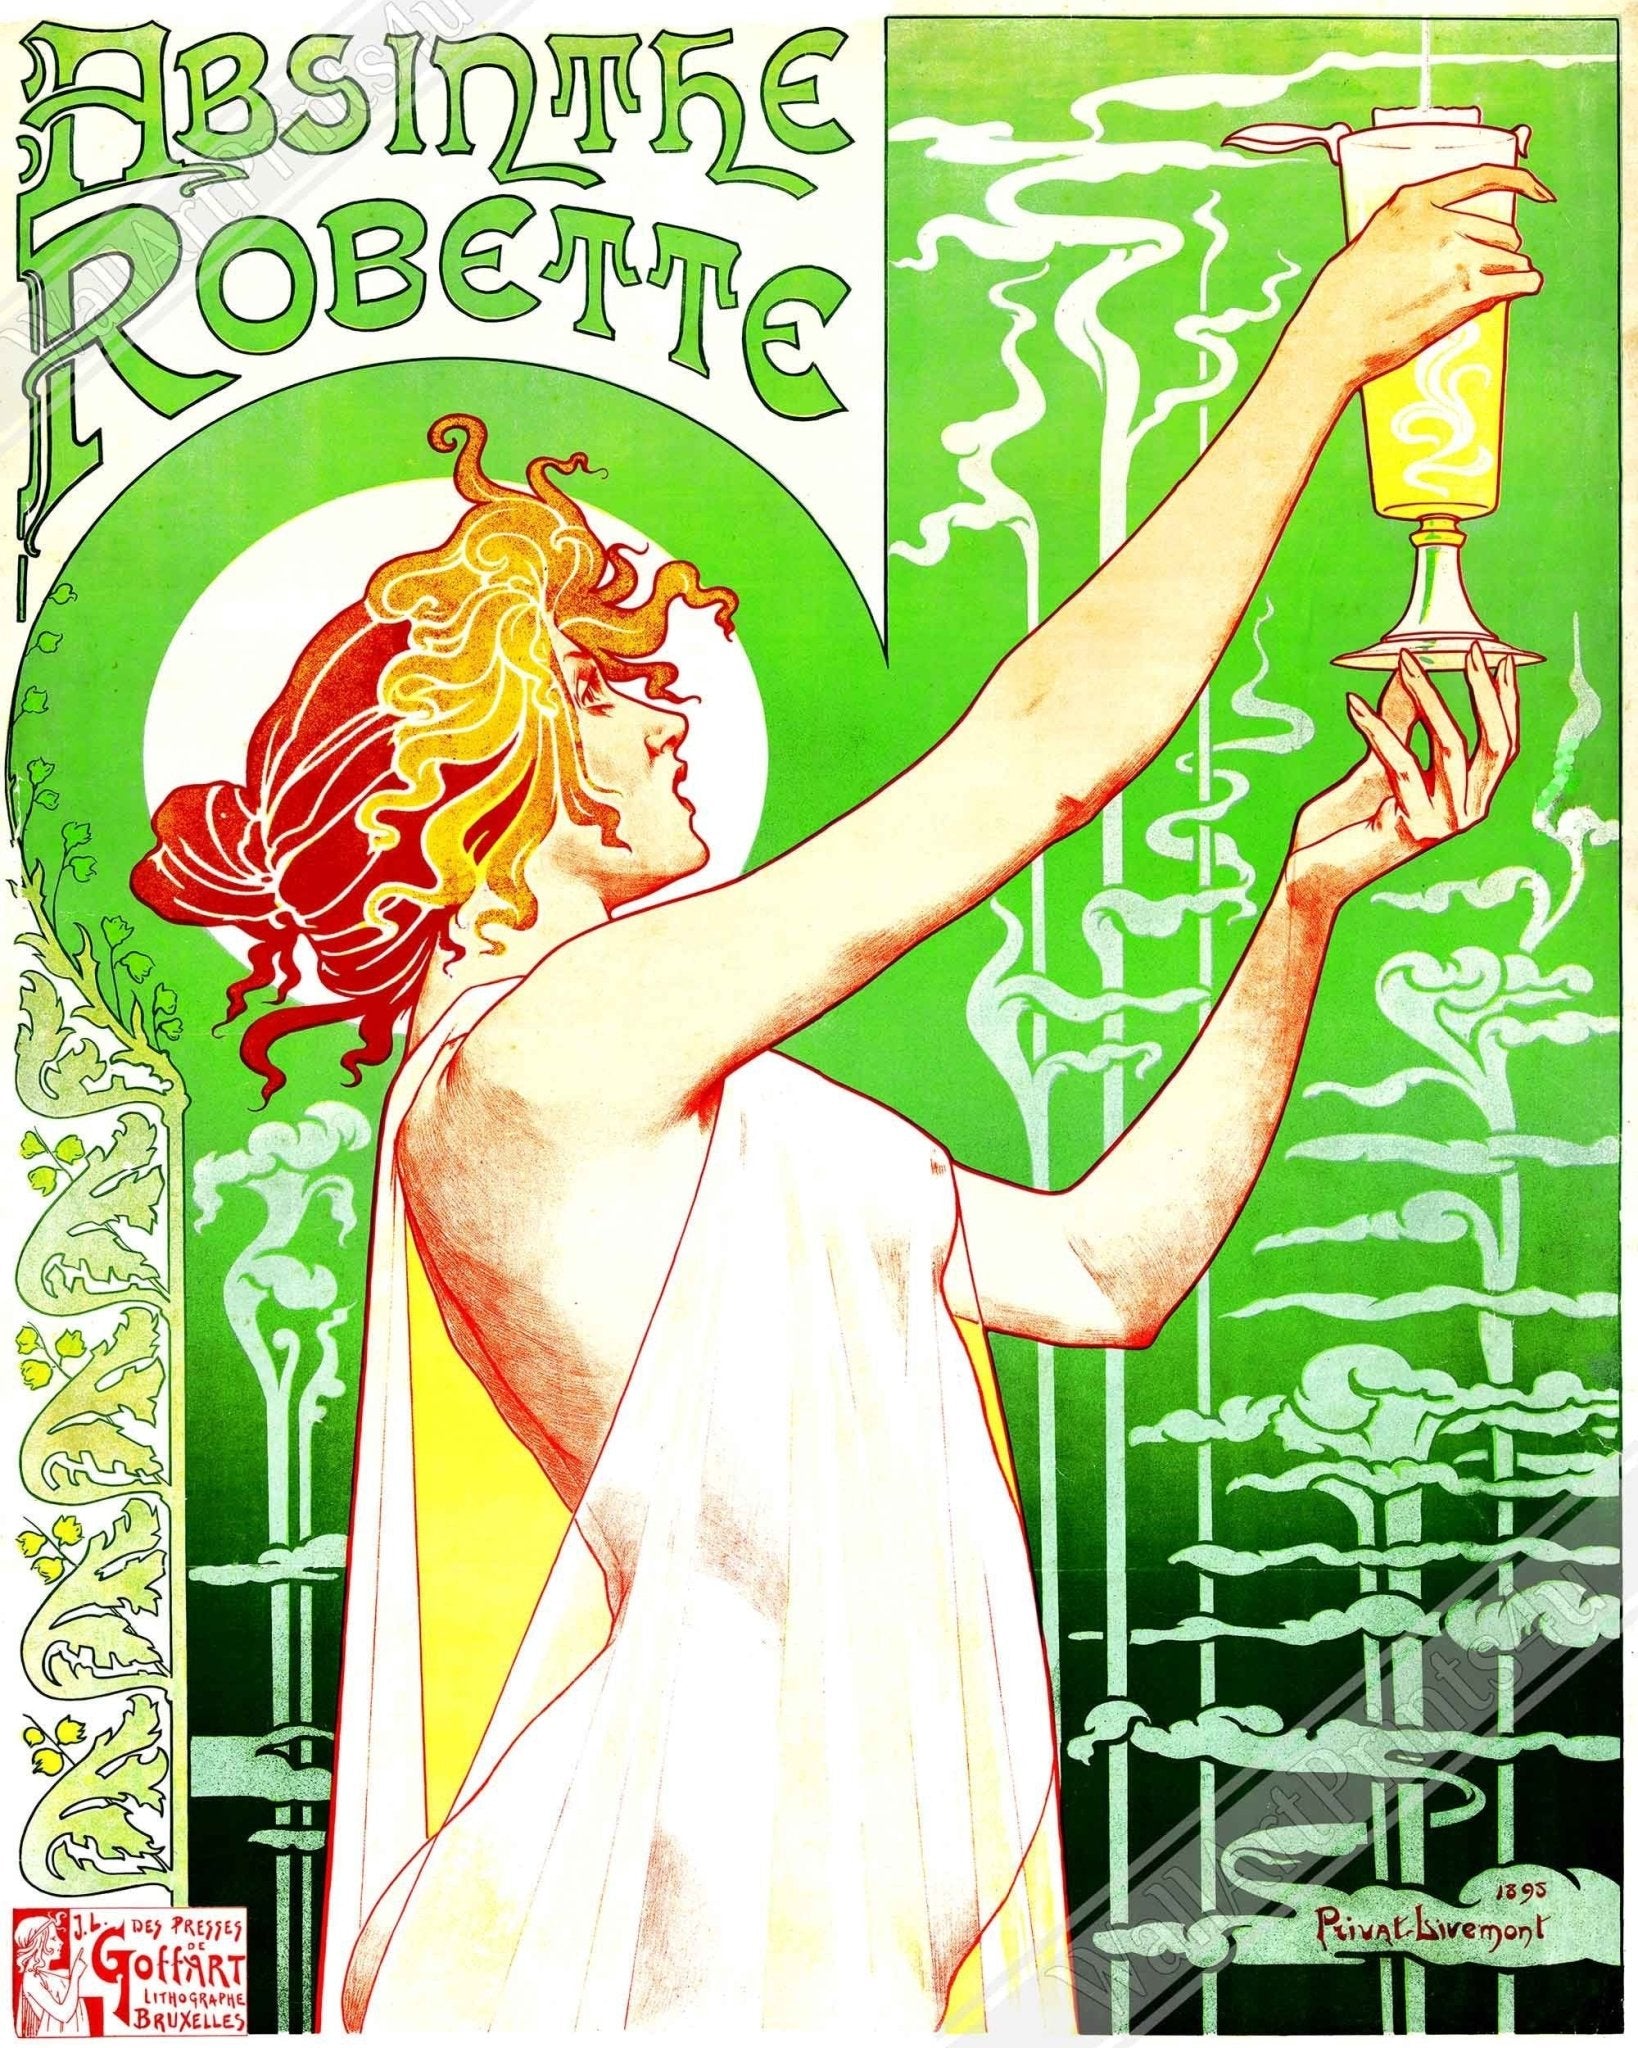 Absinthe Poster - Absinthe Ban - Absinthe Robette Poster Print 1896 - WallArtPrints4U